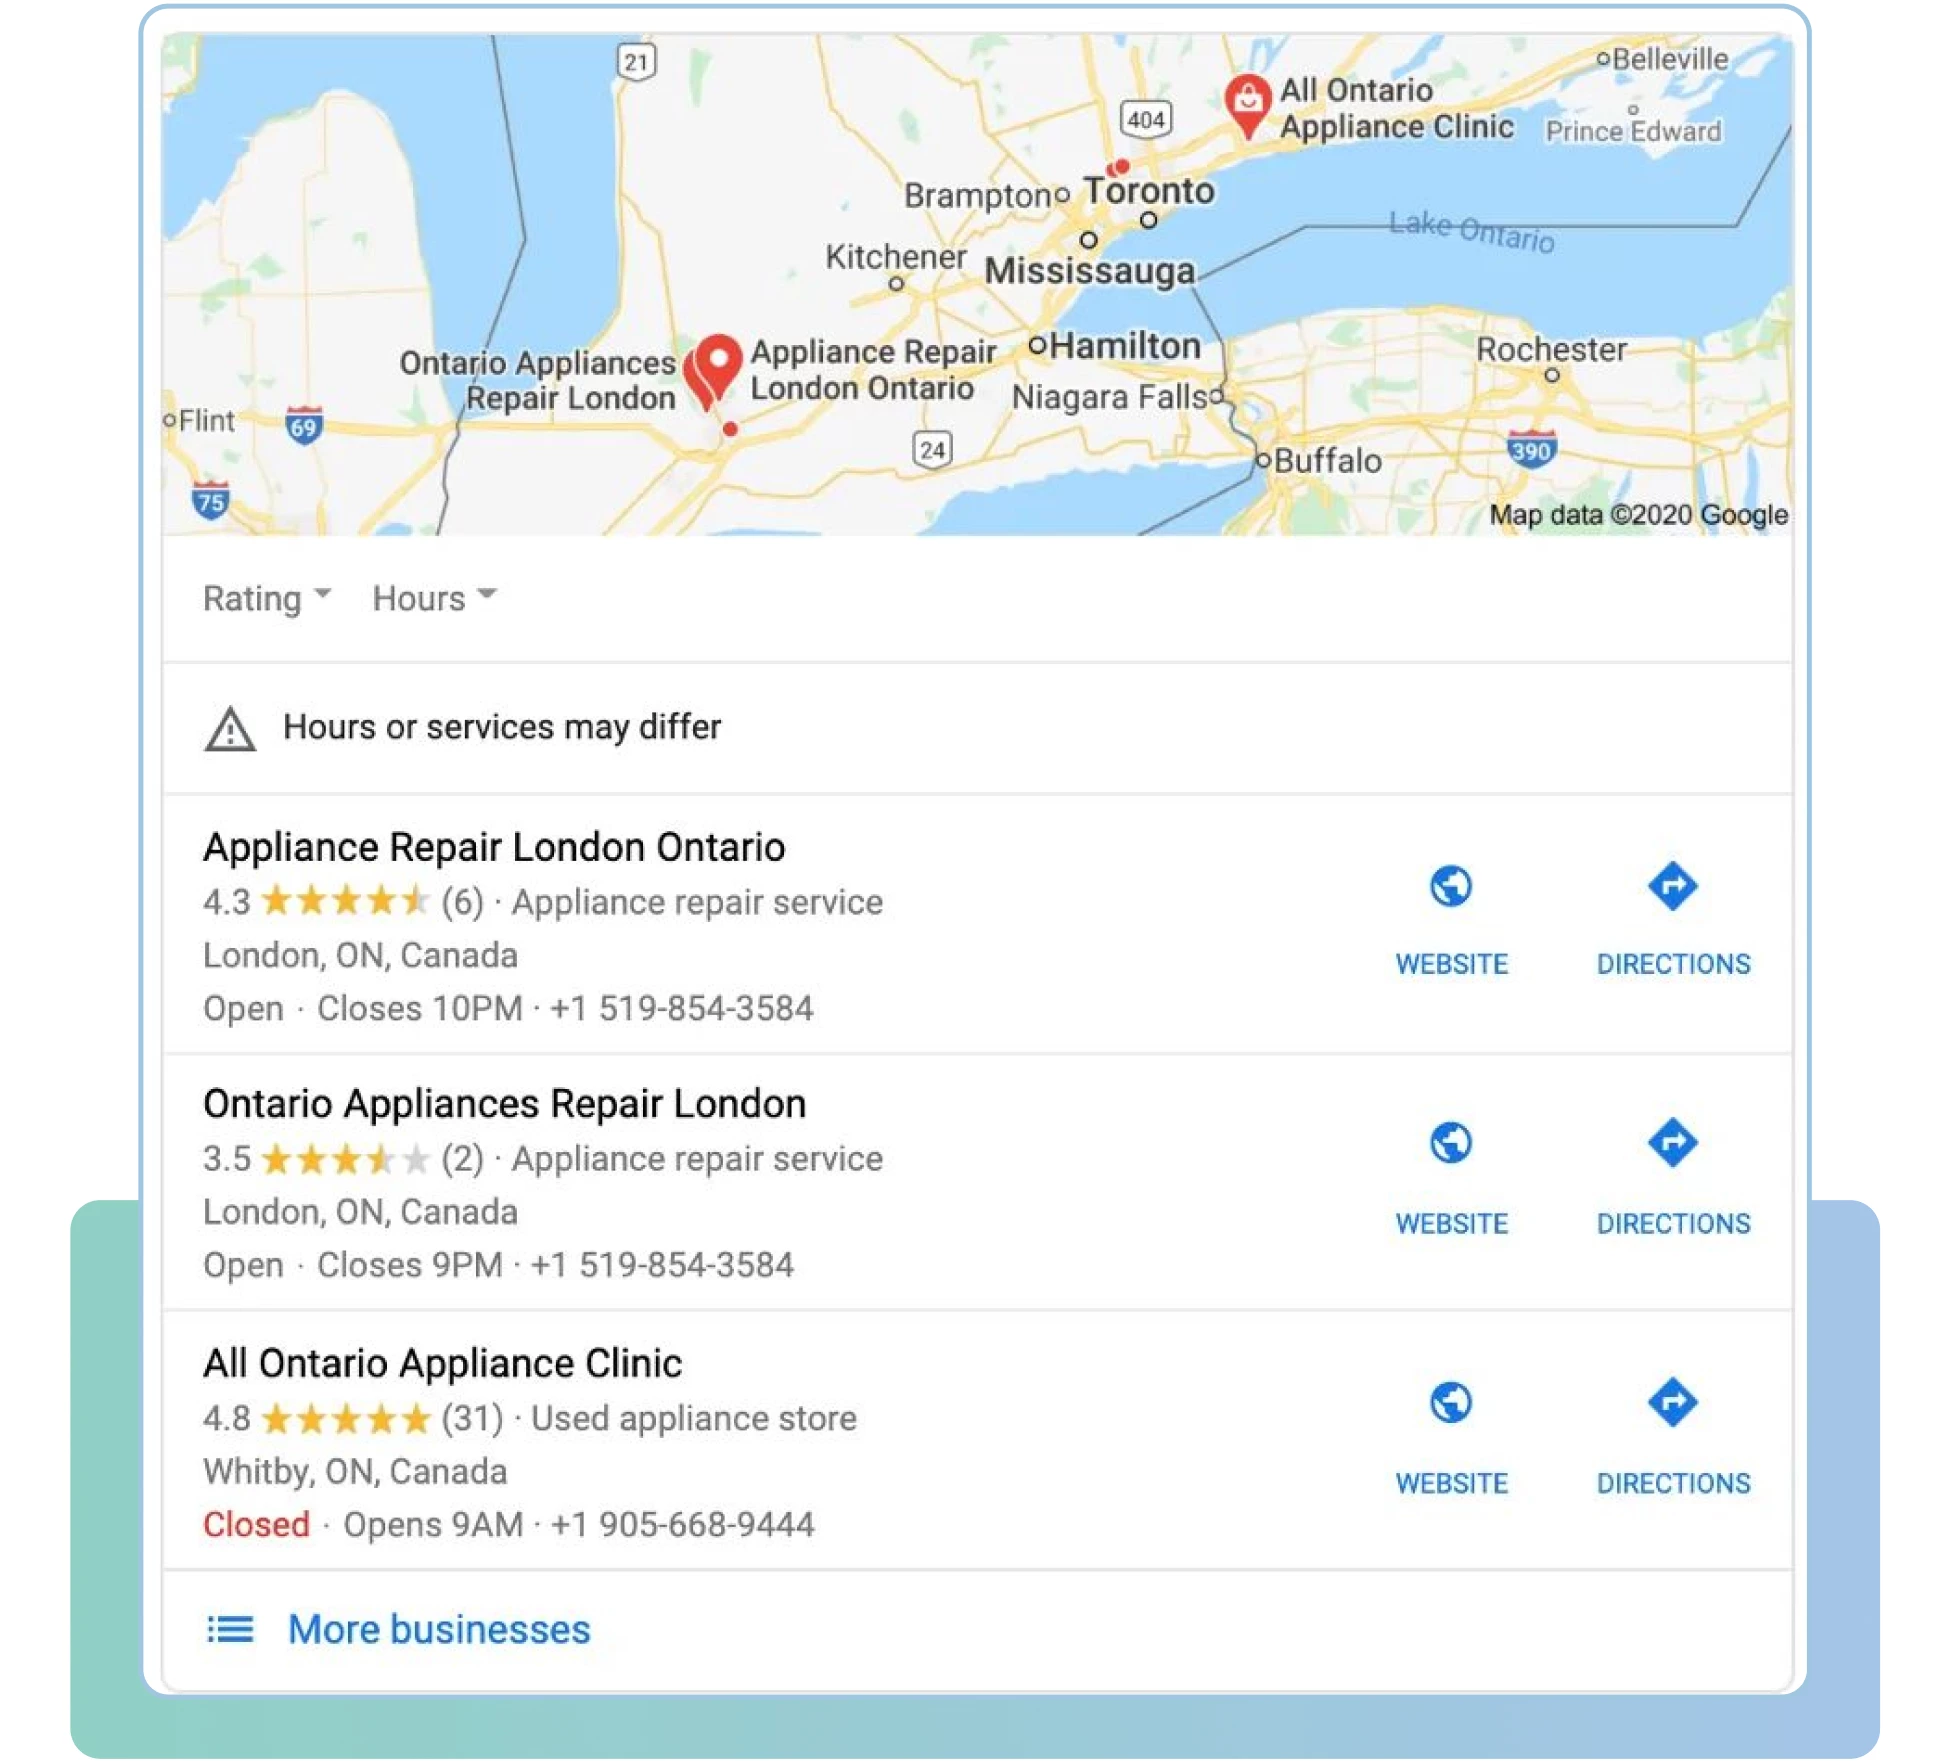 Siti web delle agenzie di viaggio e SEO per Google nel 2021